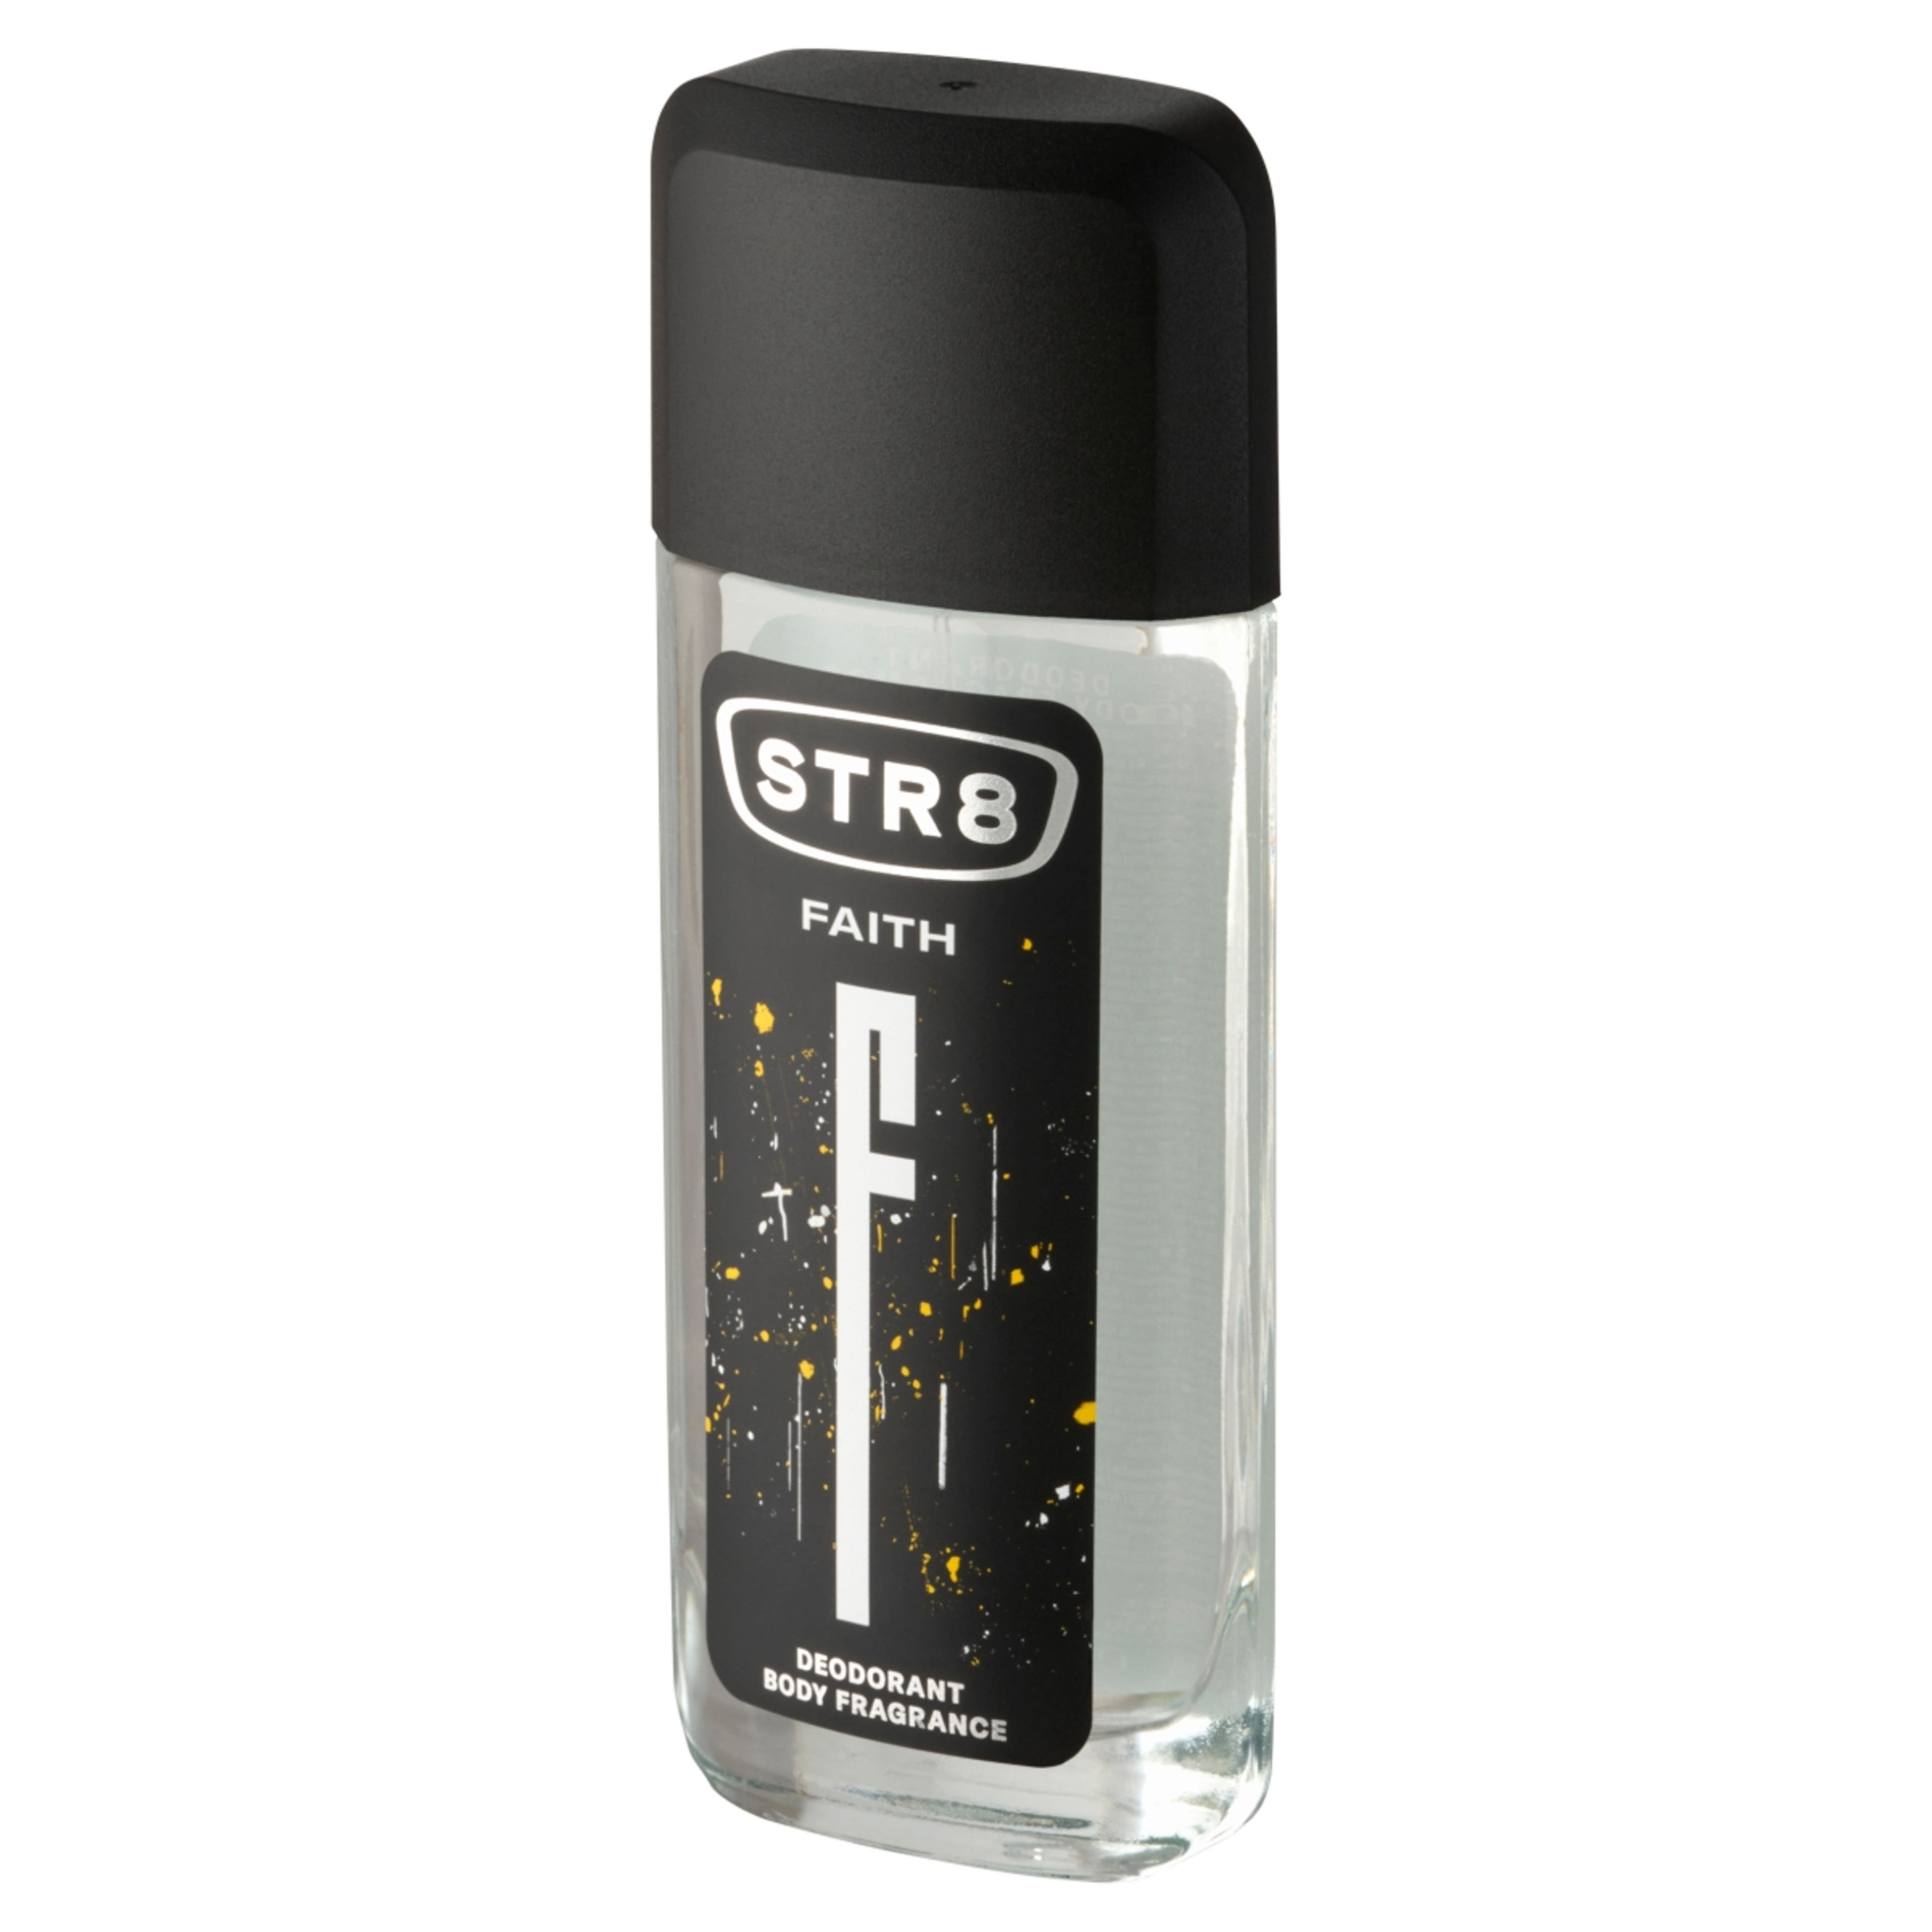 STR8 Faith Body Fragrance parfüm-spray  - 85 ml-2